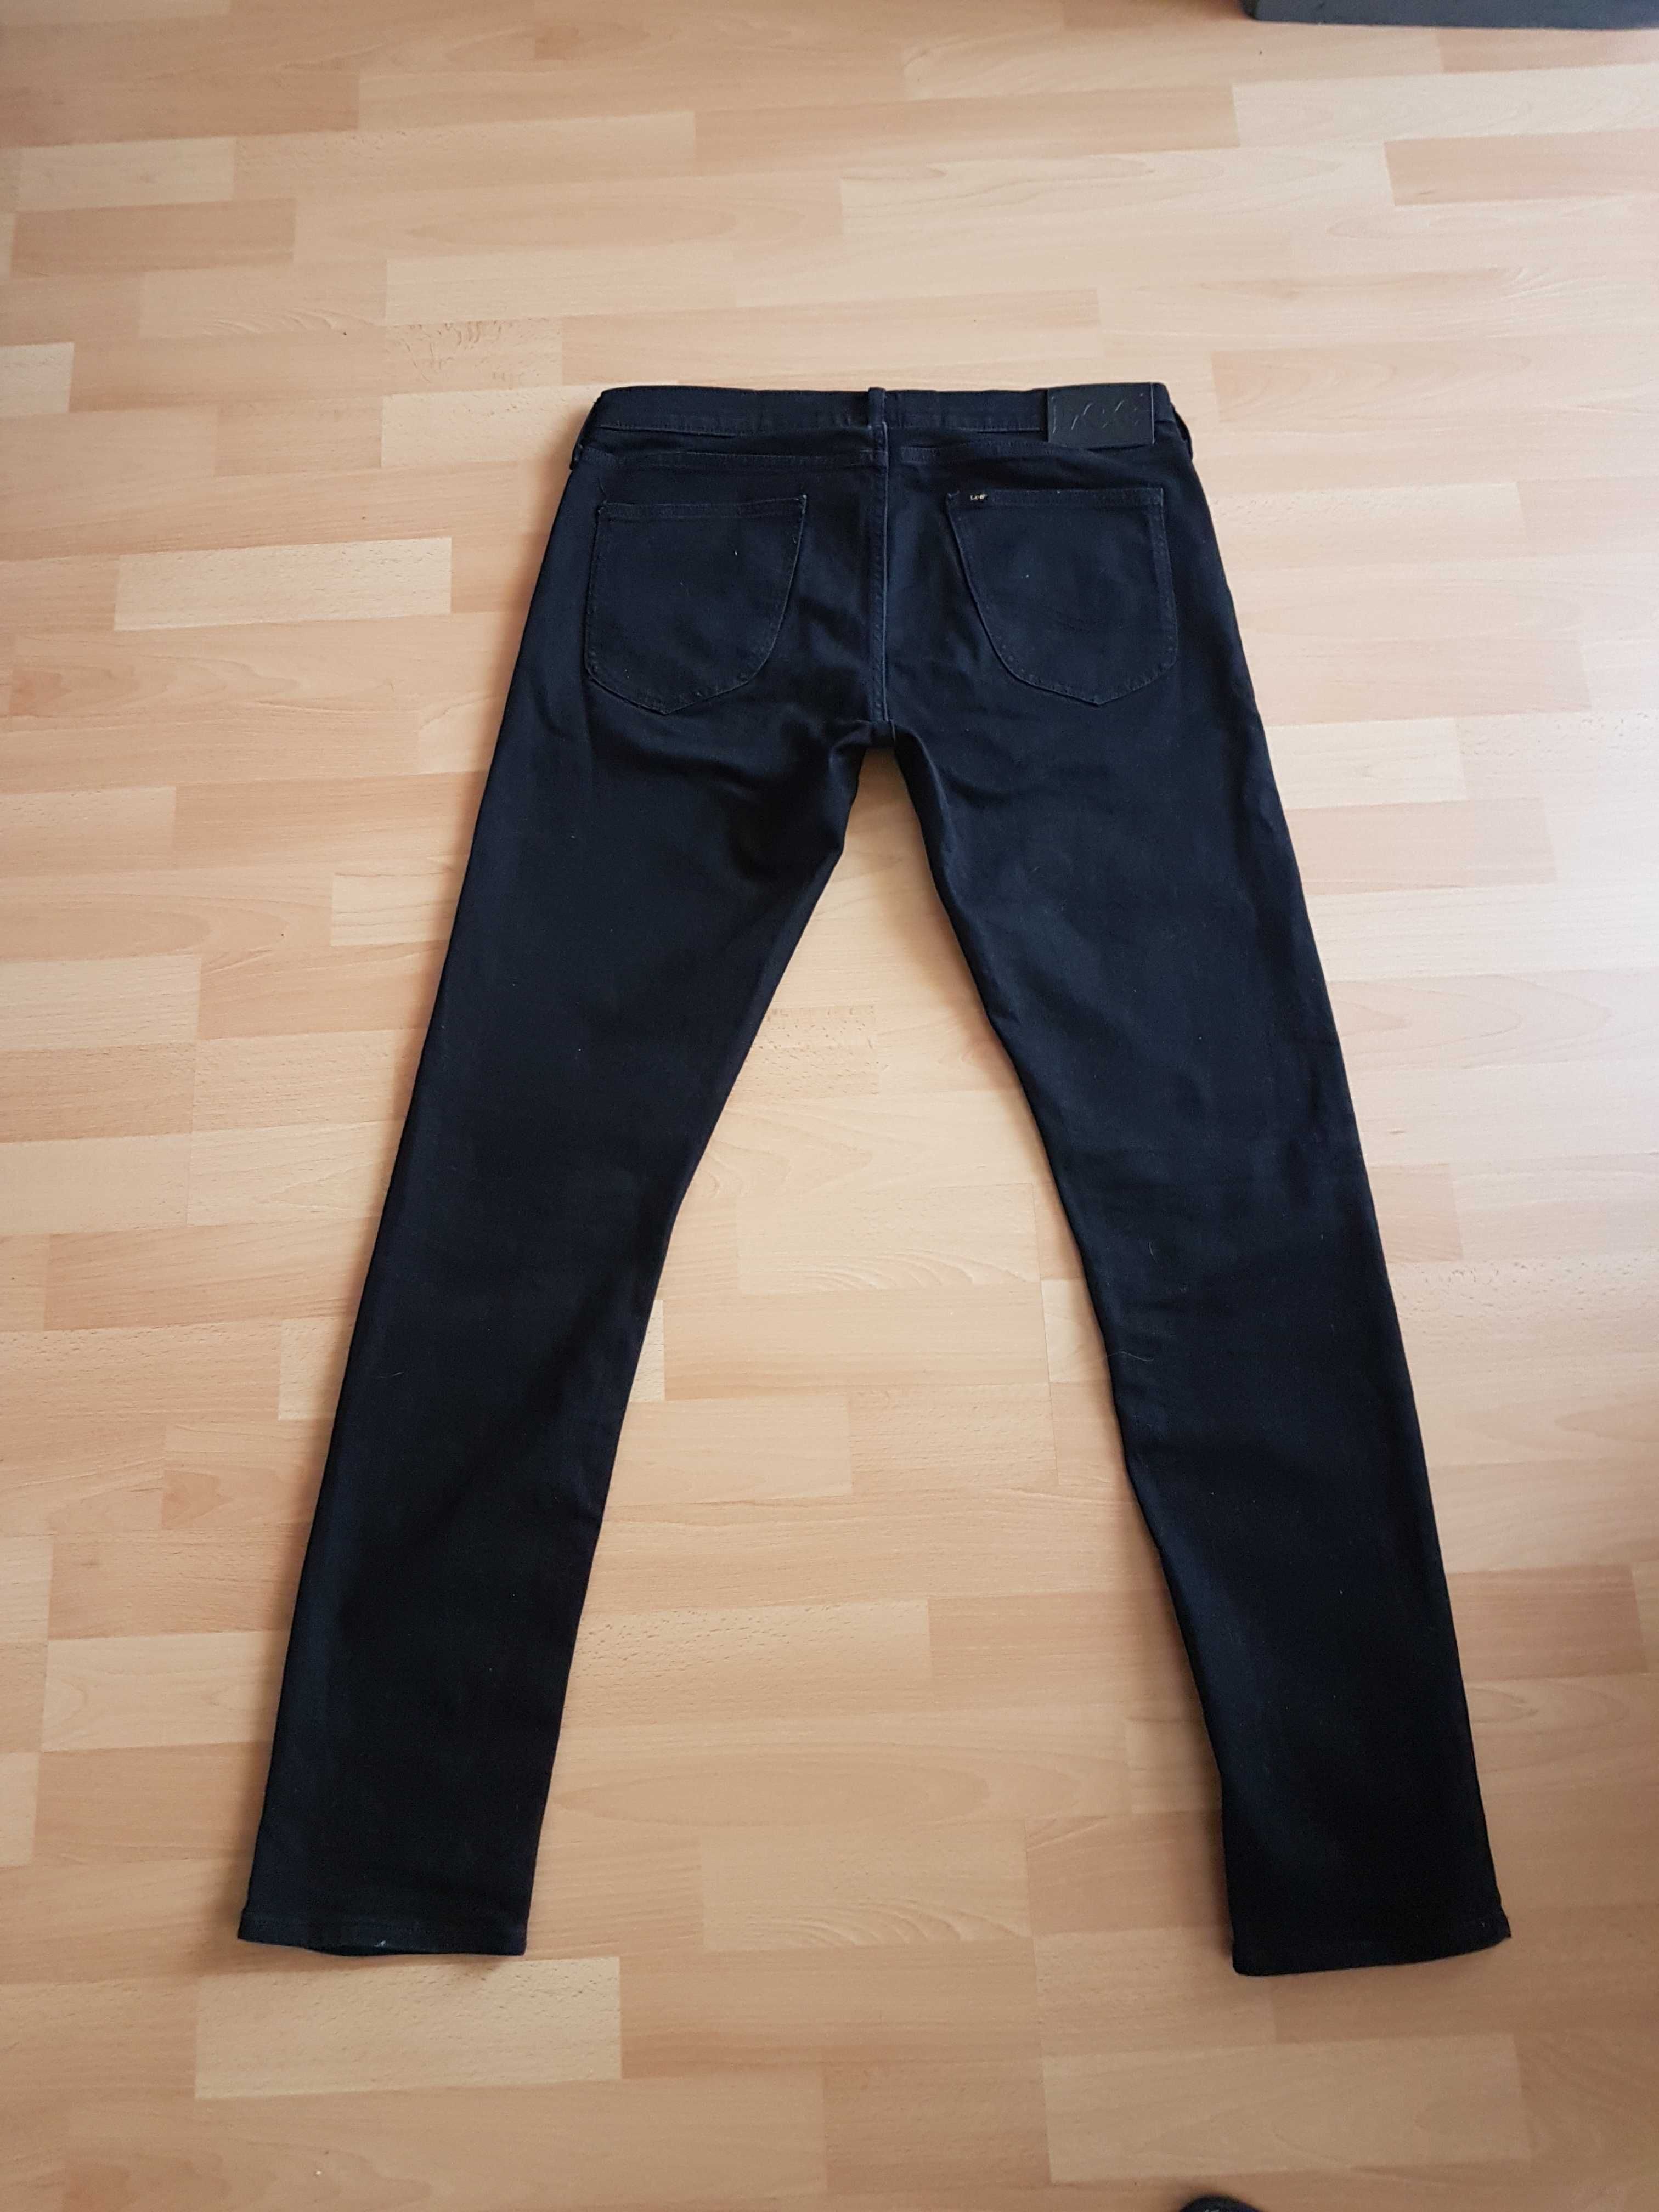 Lee LUKE W34 L34 jeansy spodnie jeansowe skinny slim 34/34 jak NOWE